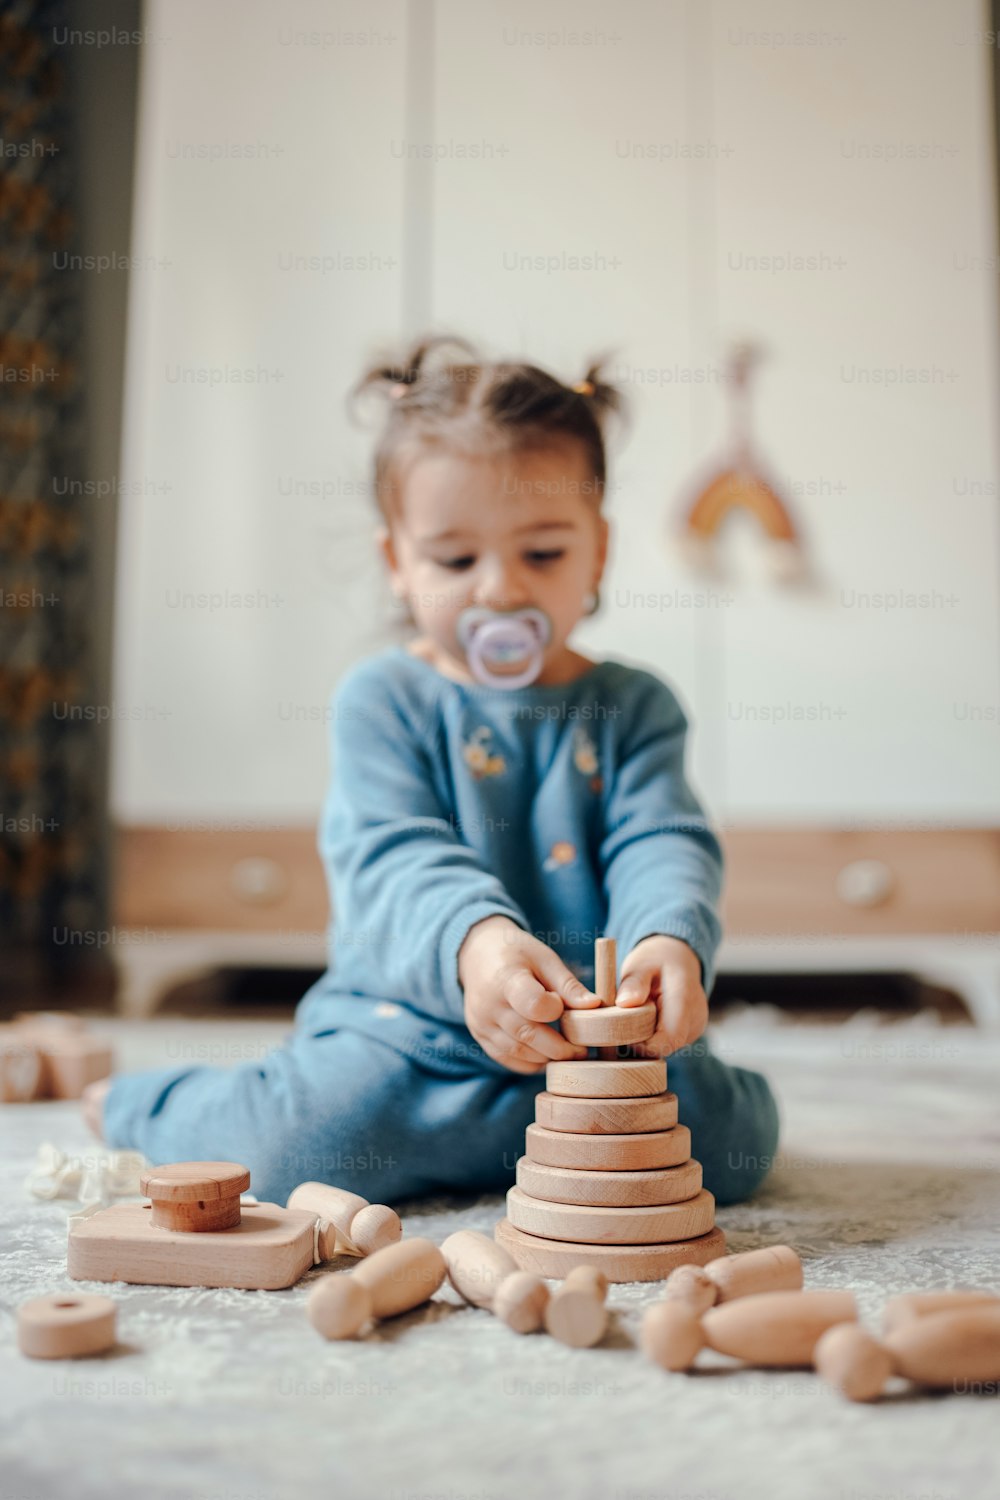 Un bebé jugando con una pila de bloques de madera